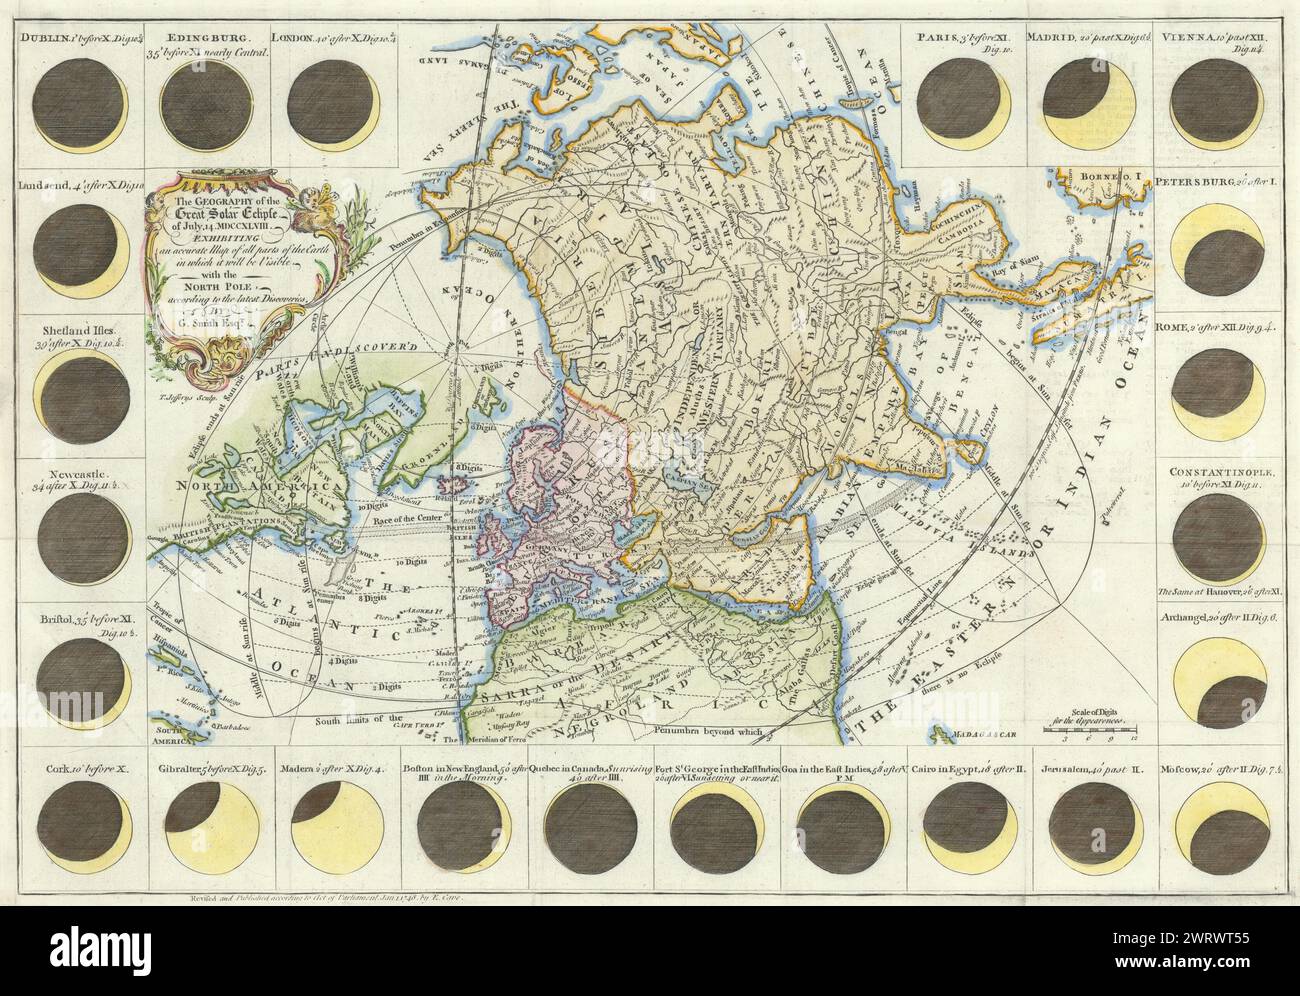 Die Geographie der großen Sonnenfinsternis vom 14. Juli 1748. SMITH G 1748-Karte Stockfoto